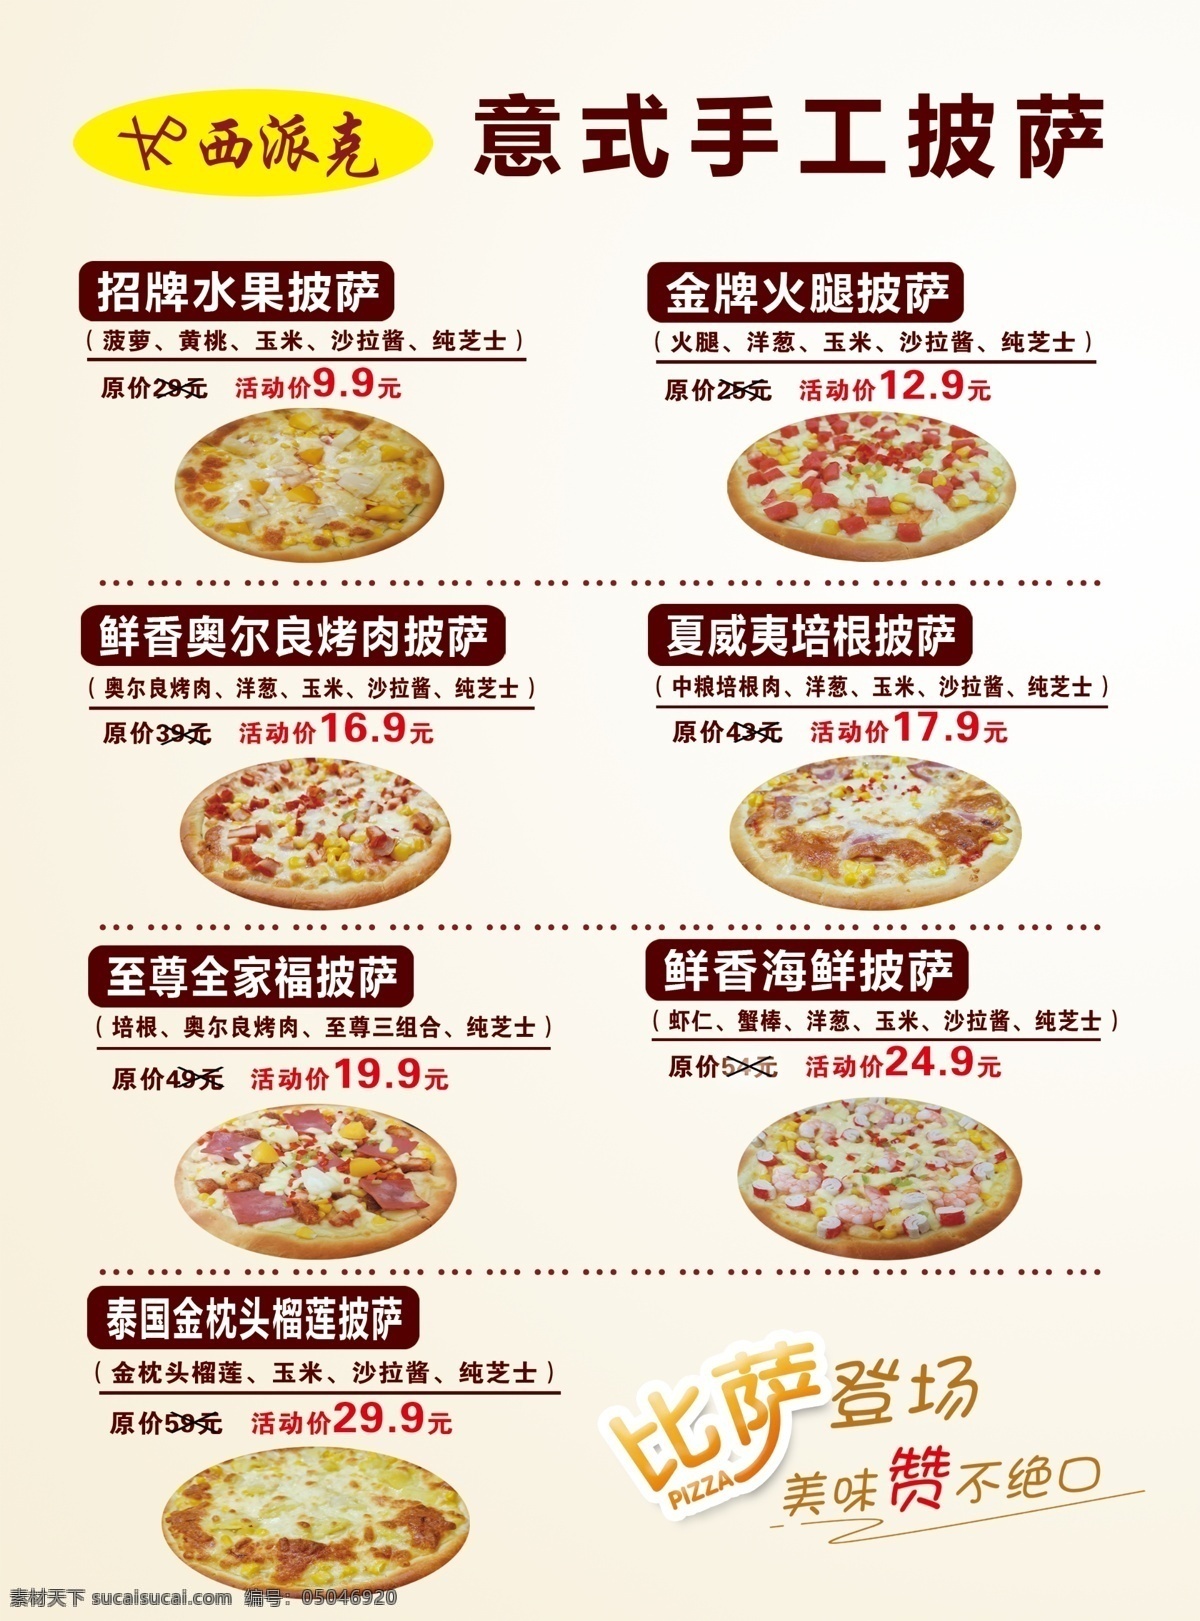 手工披萨图片 手工披萨 纯色底 价目表 餐饮 披萨